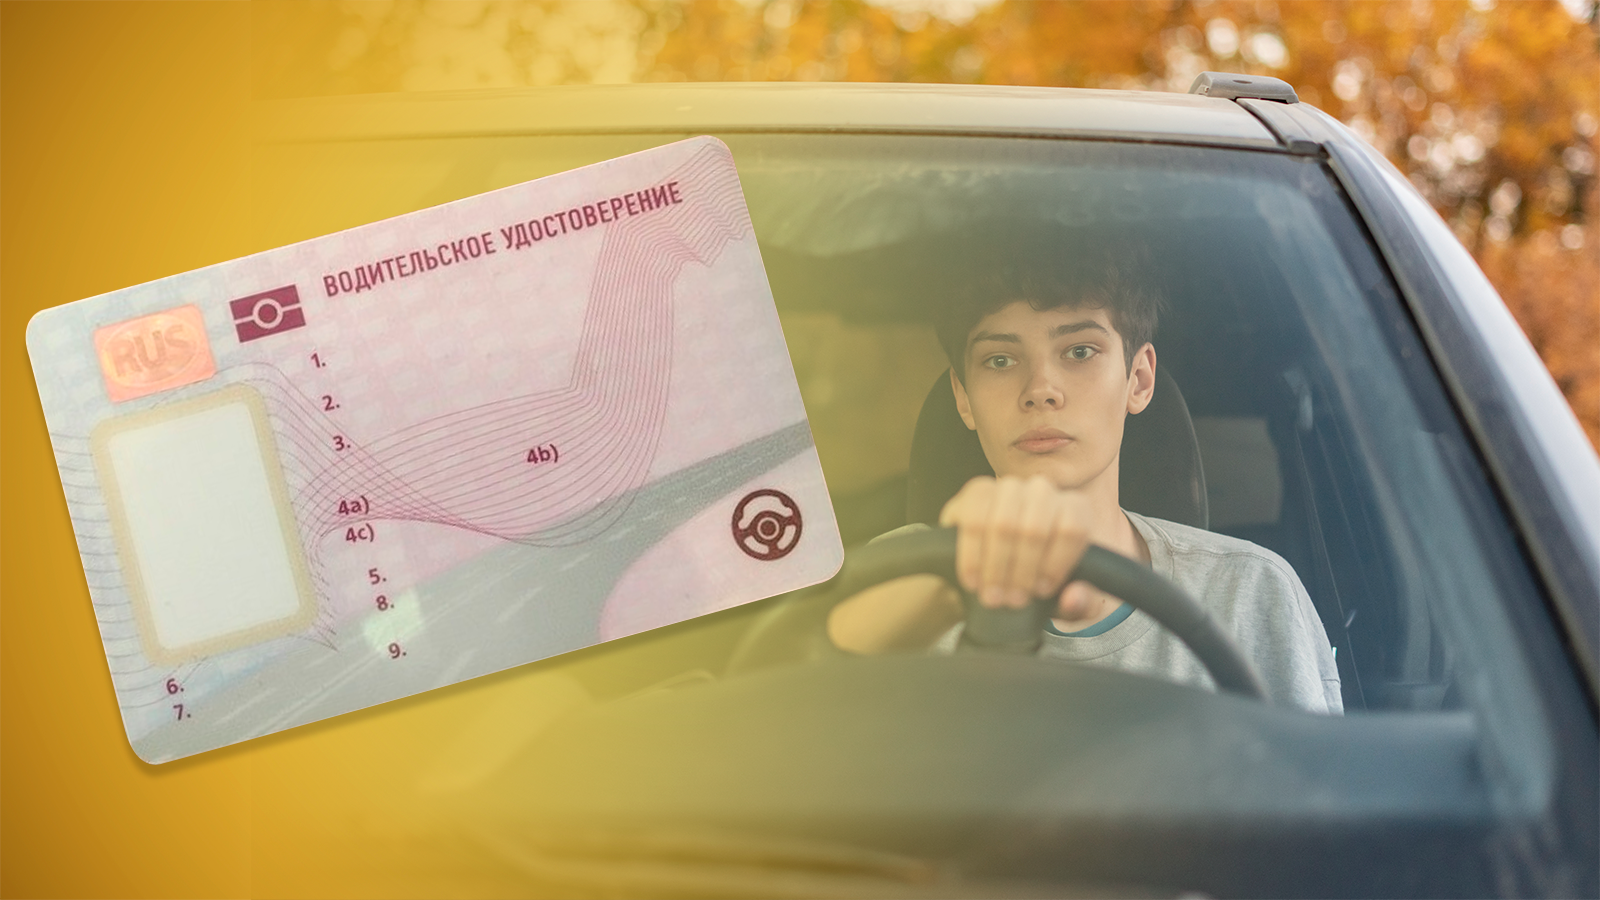 Отзыв водительских прав. Картинки водительских прав. Фото с водительскими правами.